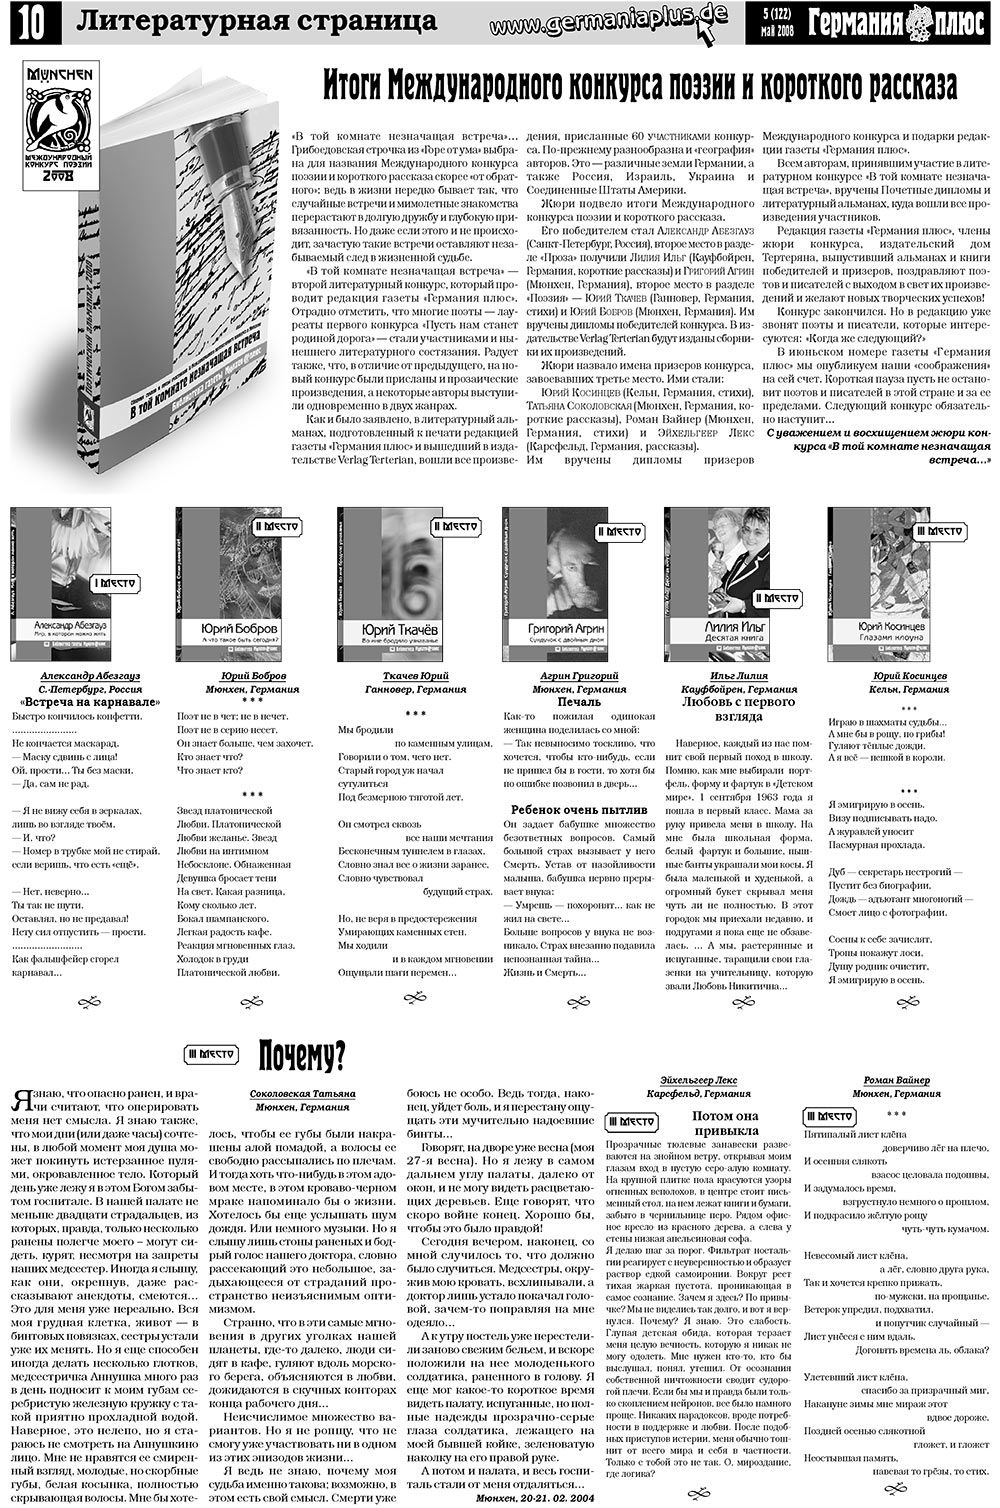 Германия плюс (газета). 2008 год, номер 5, стр. 14